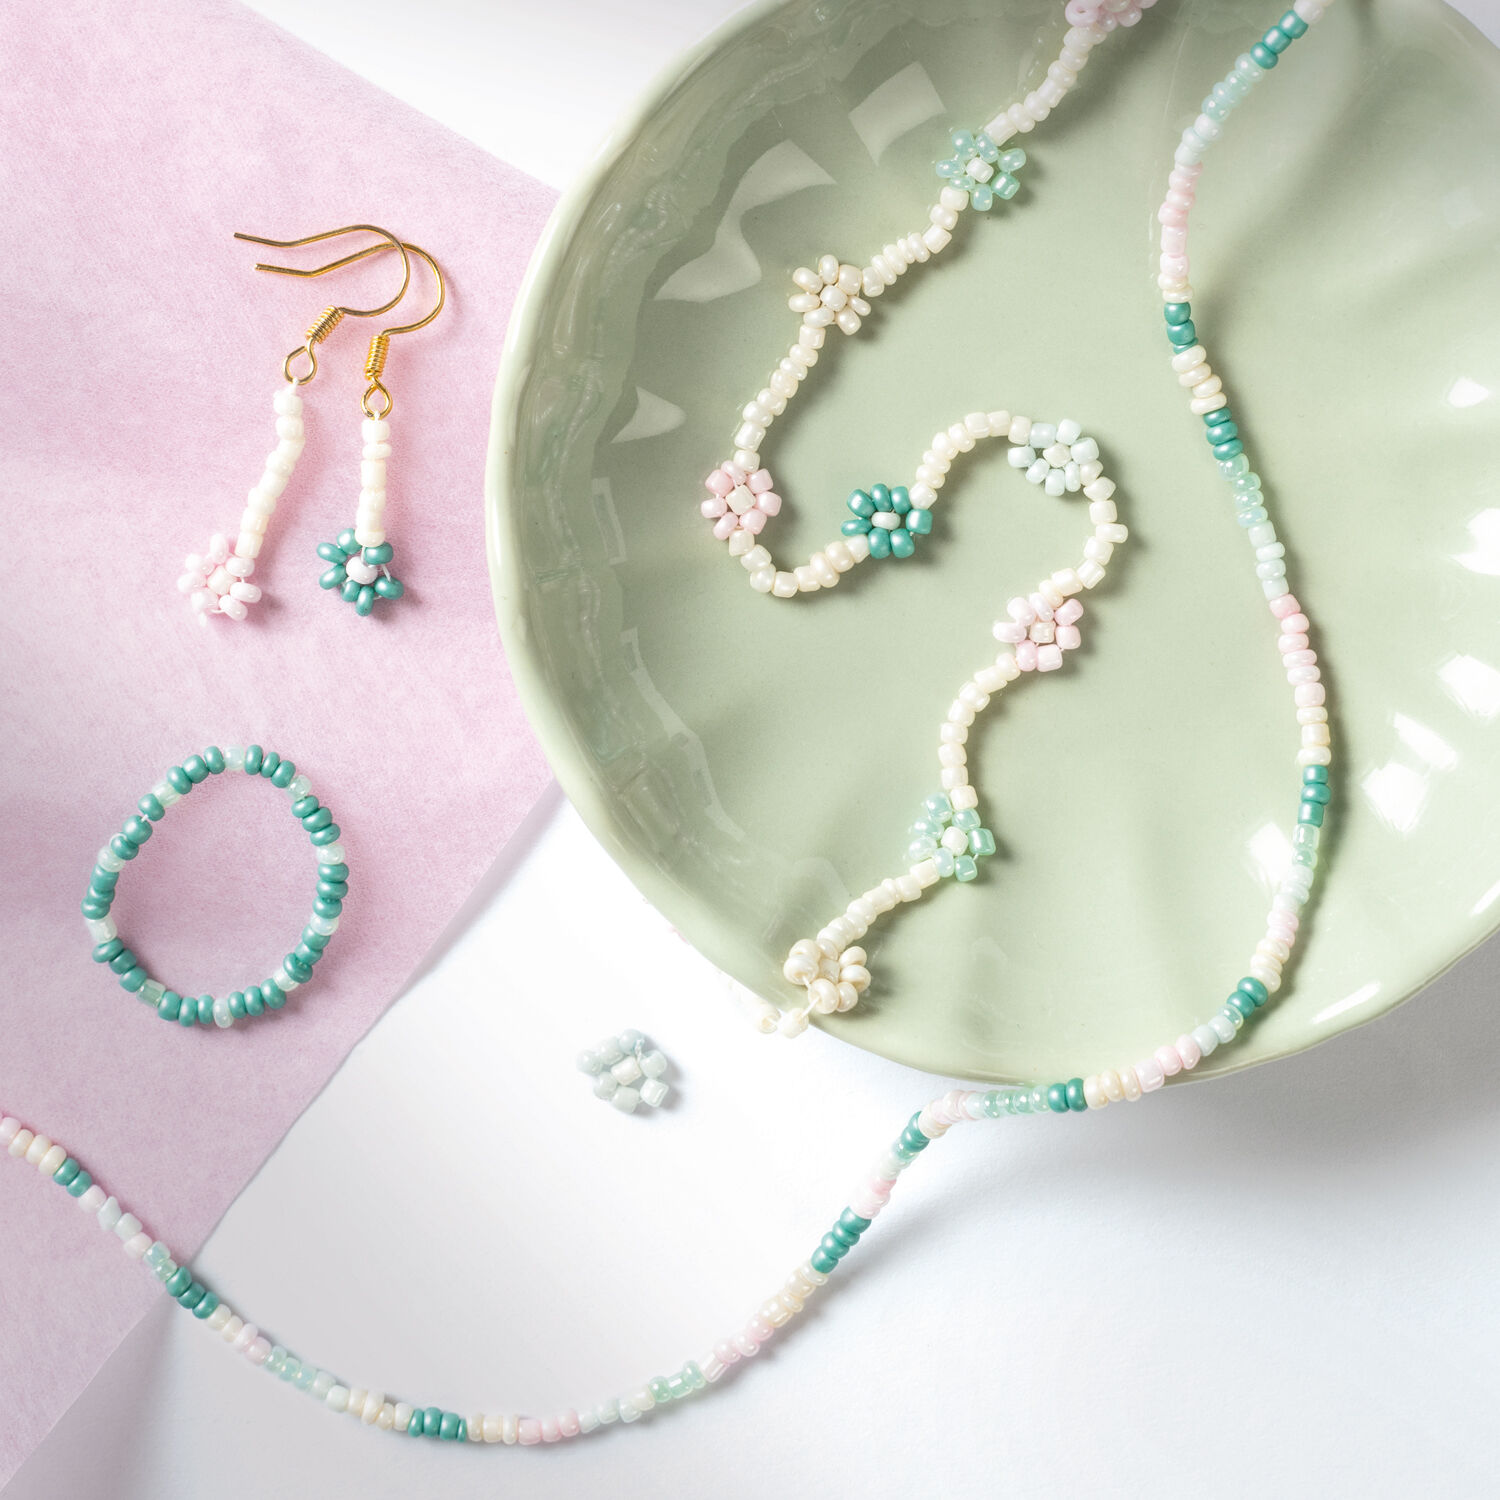 NEU Rocailles-Perlen-Set Pastell, inkl. 90g Perlen, 3x1m Nylonfaden, 3 Verschlsse Bild 3